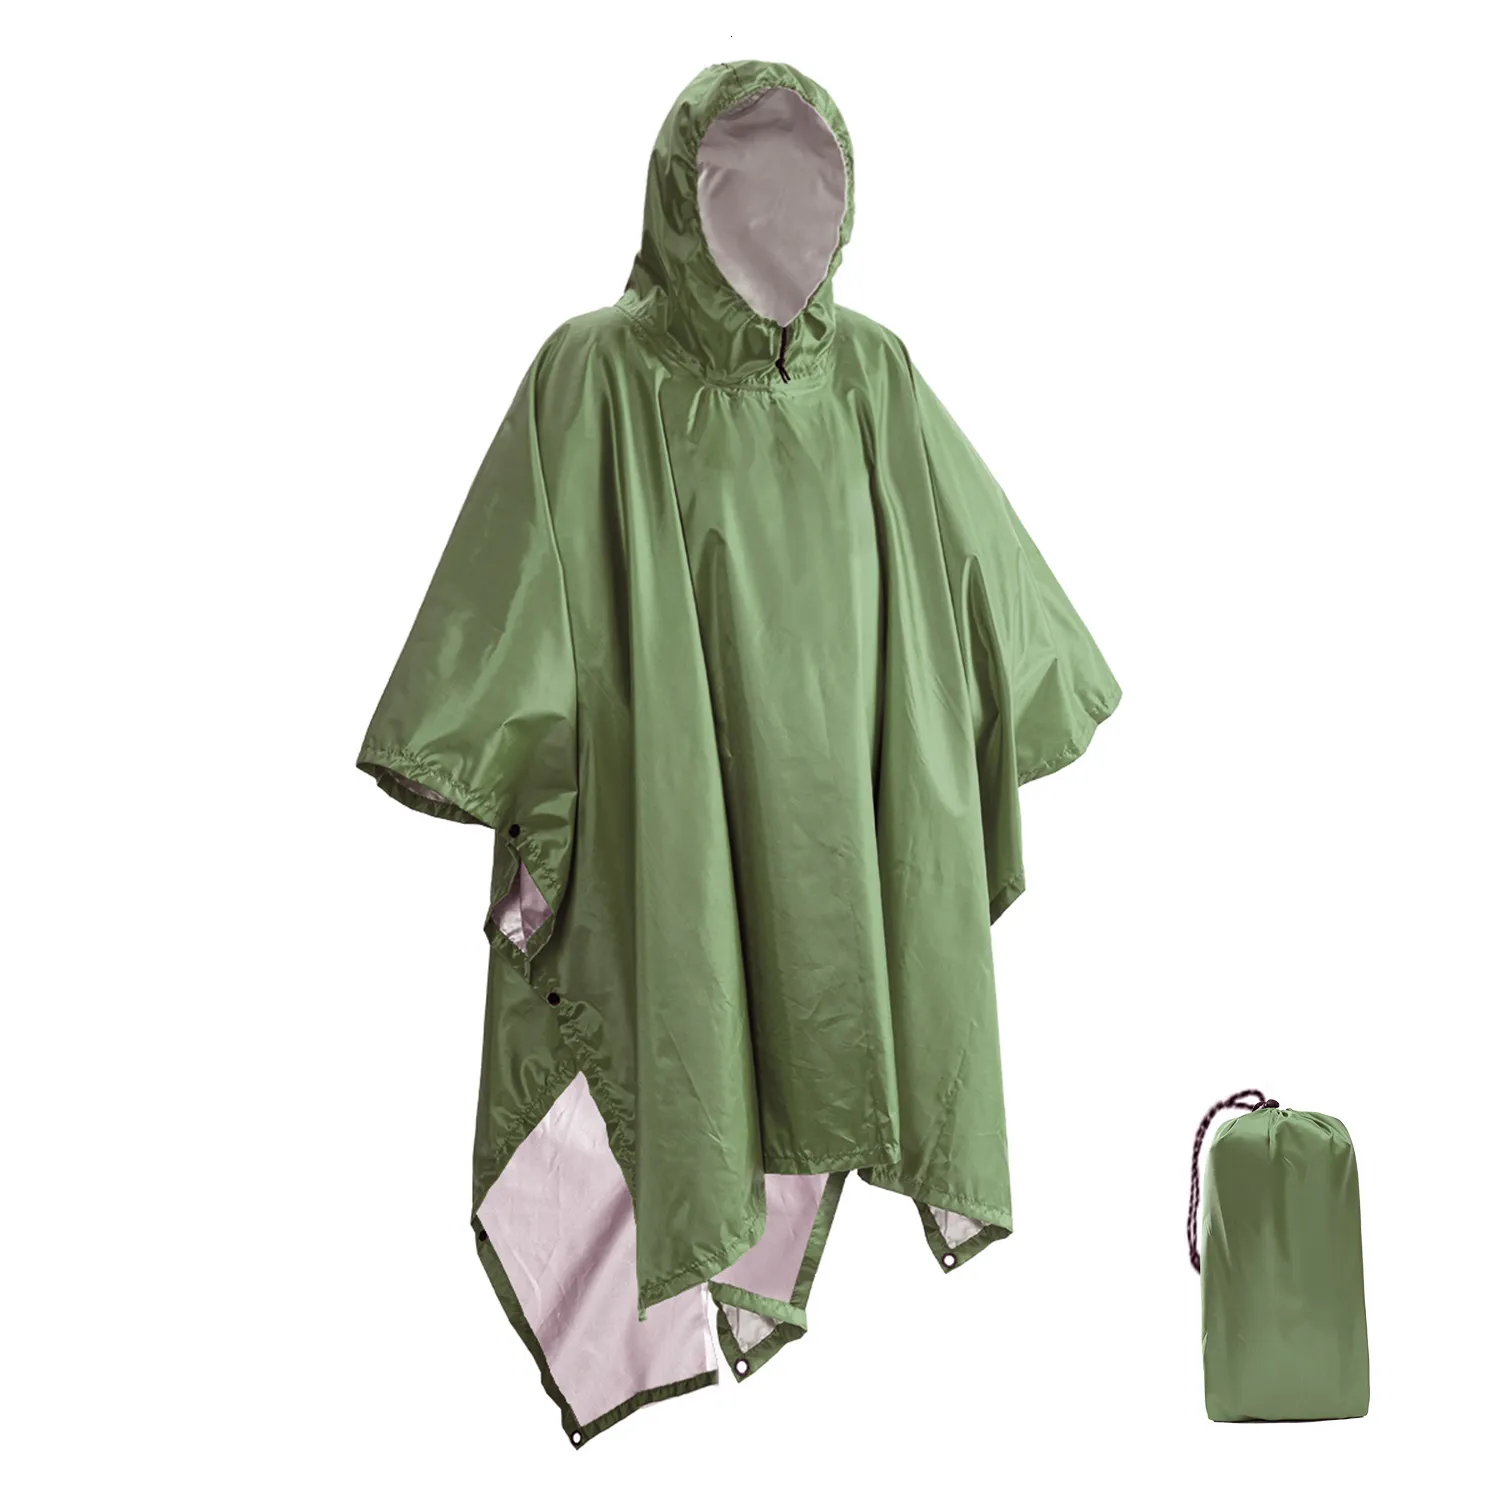 يرتدي المطر معاطف المطر محمولة متعددة الوظائف 3 في 1 معطف المطر المشي لمسافات طويلة معطف المطر المعطف بونتشو حصيرة المظلة في الهواء الطلق النشاط في الهواء الطلق الإمداد رعاية المطر 230329